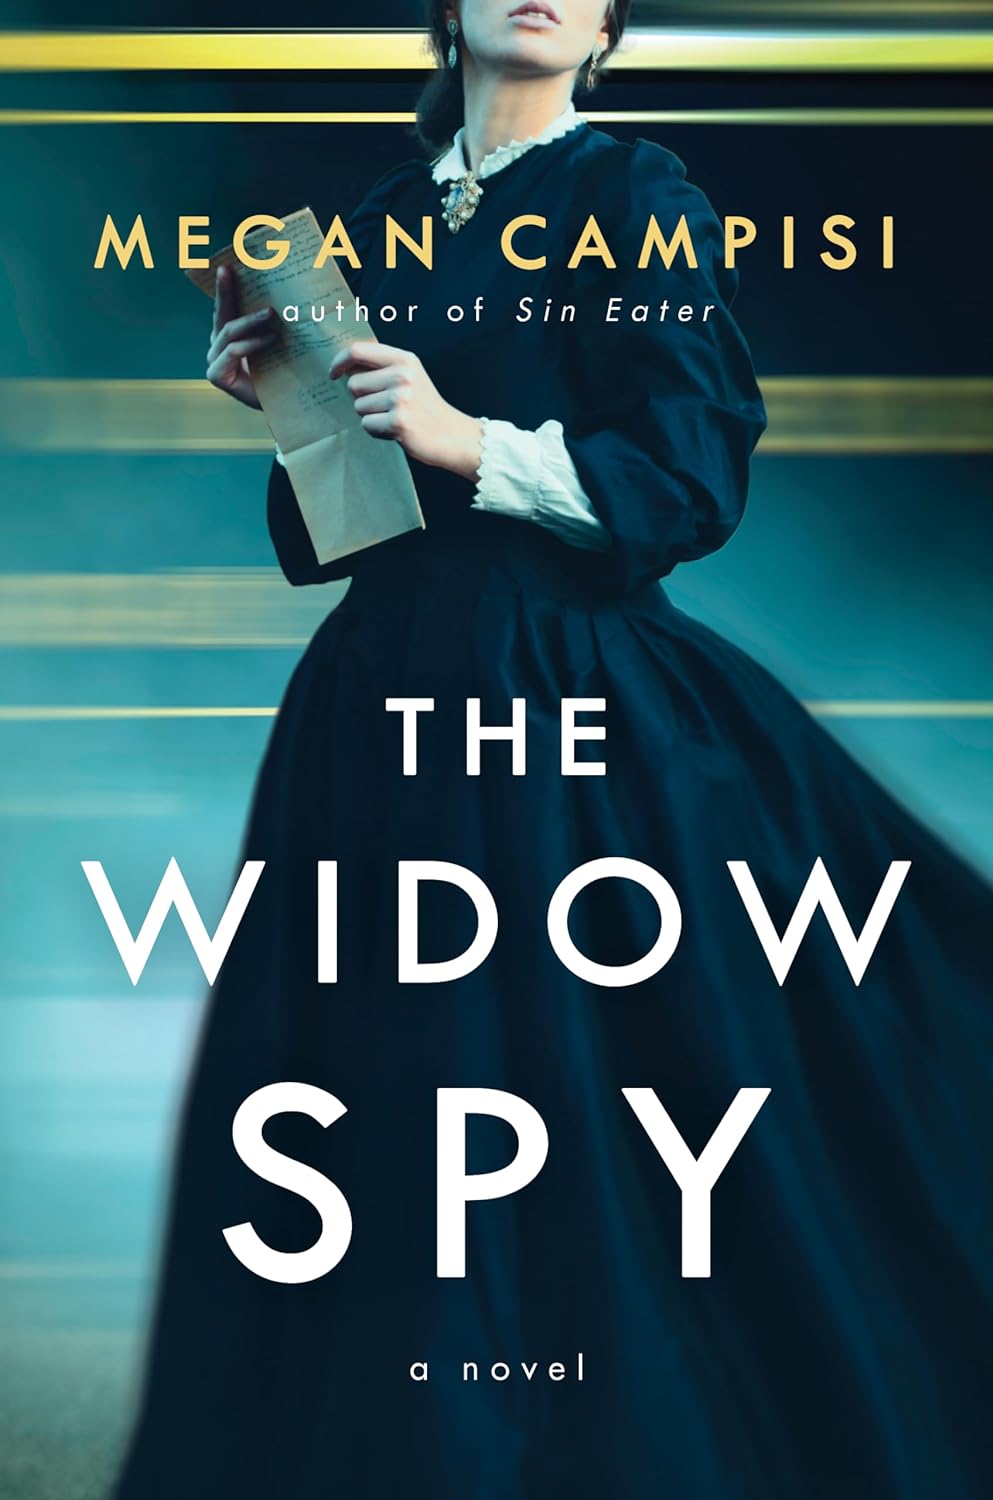 Widow spy